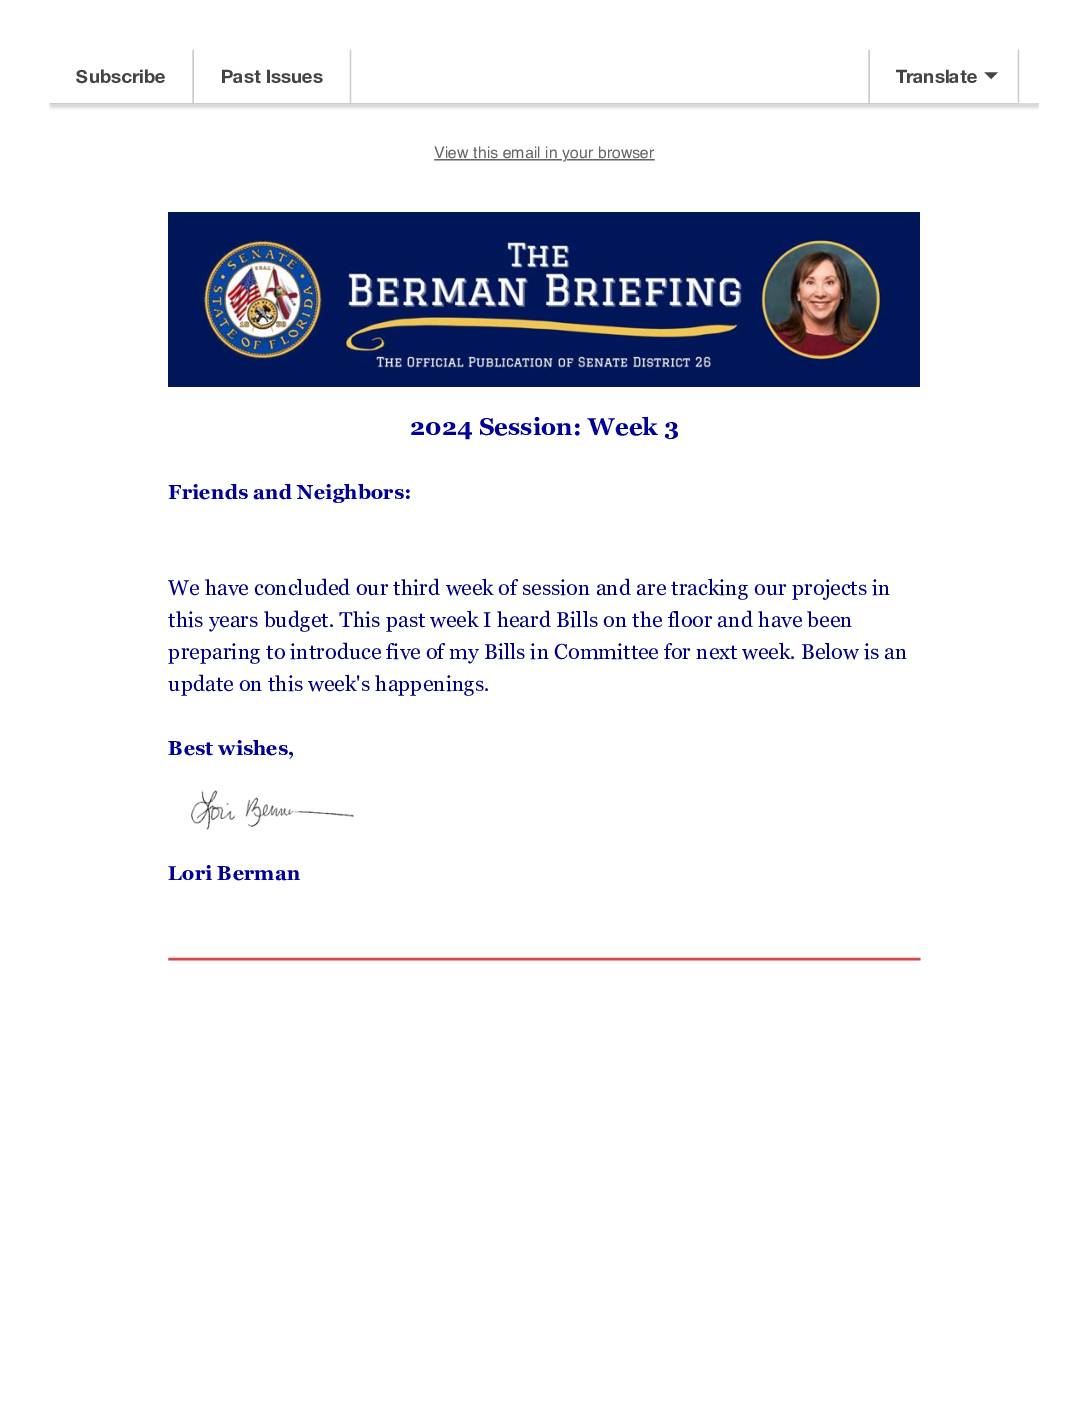 The Berman Briefing Session 2024 Week Three